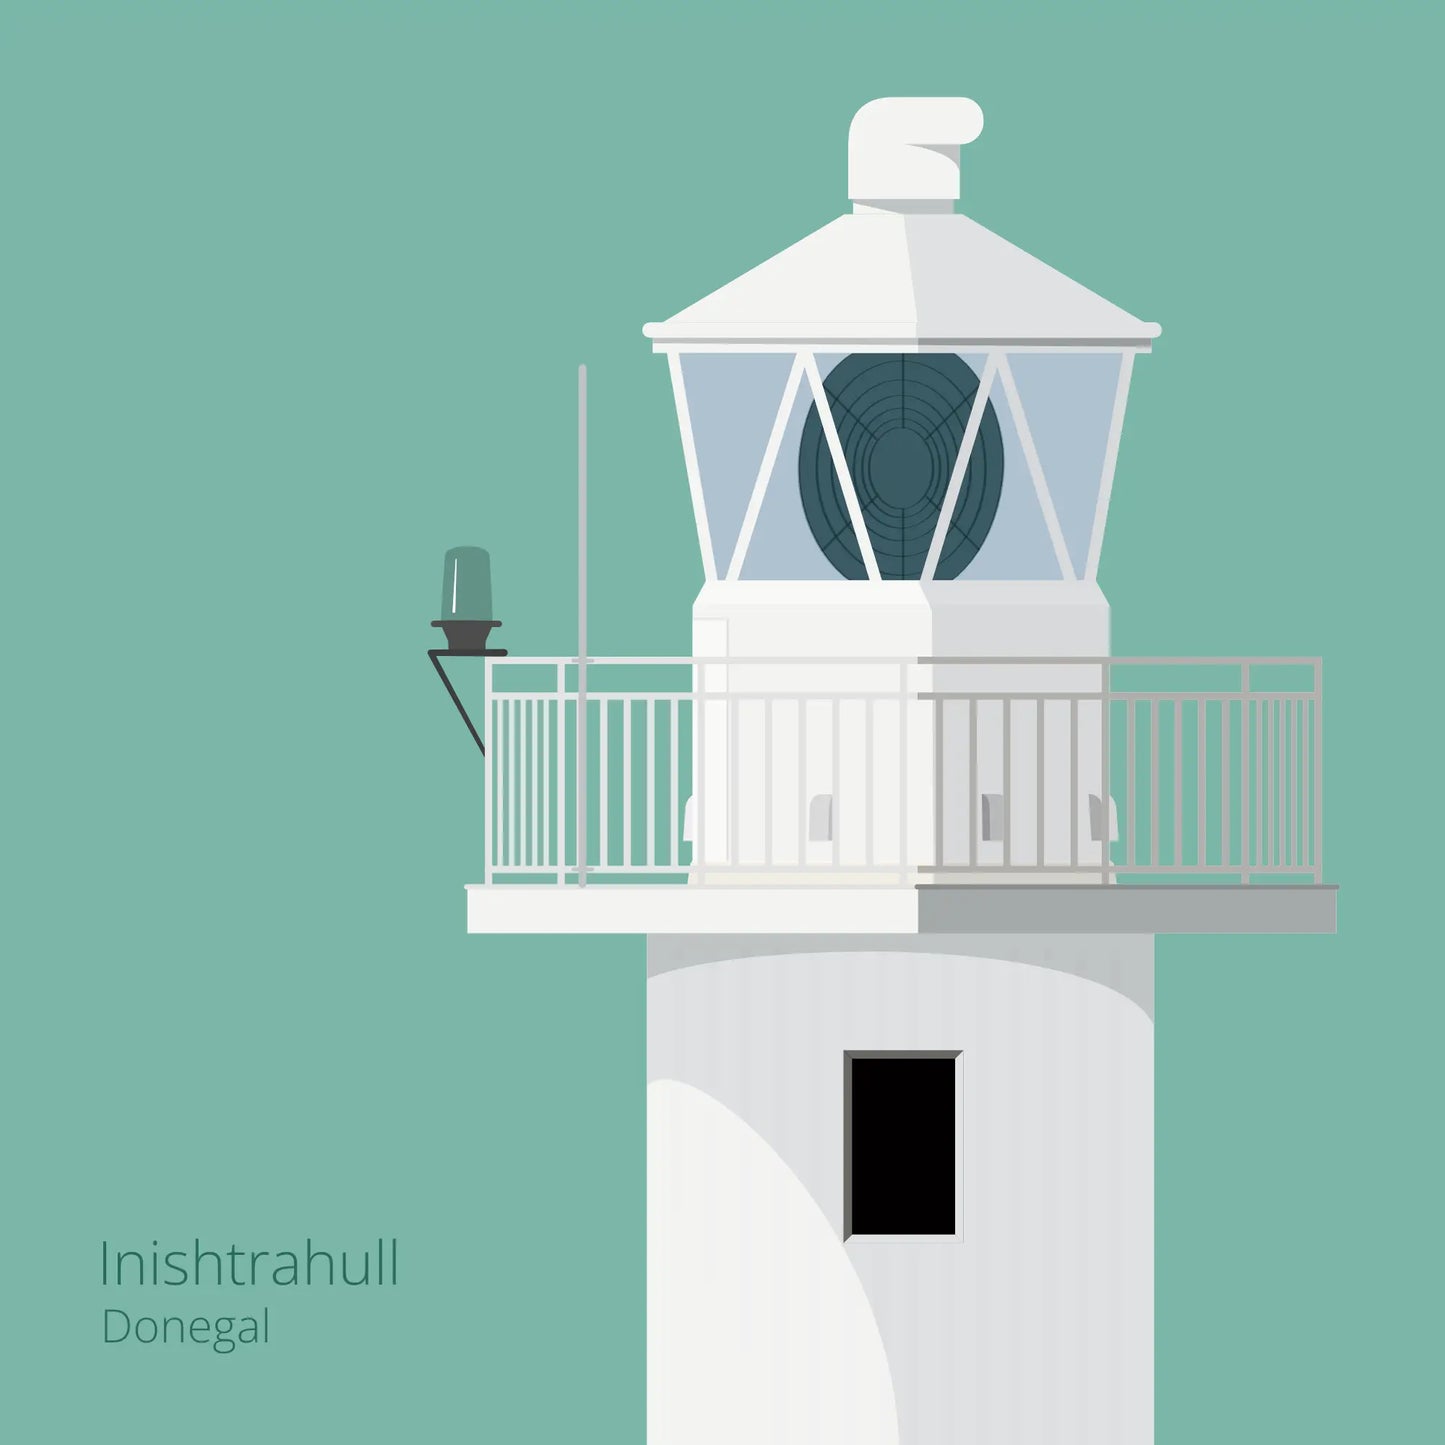 Illustration of Inishtrahull lighthouse on an ocean green background